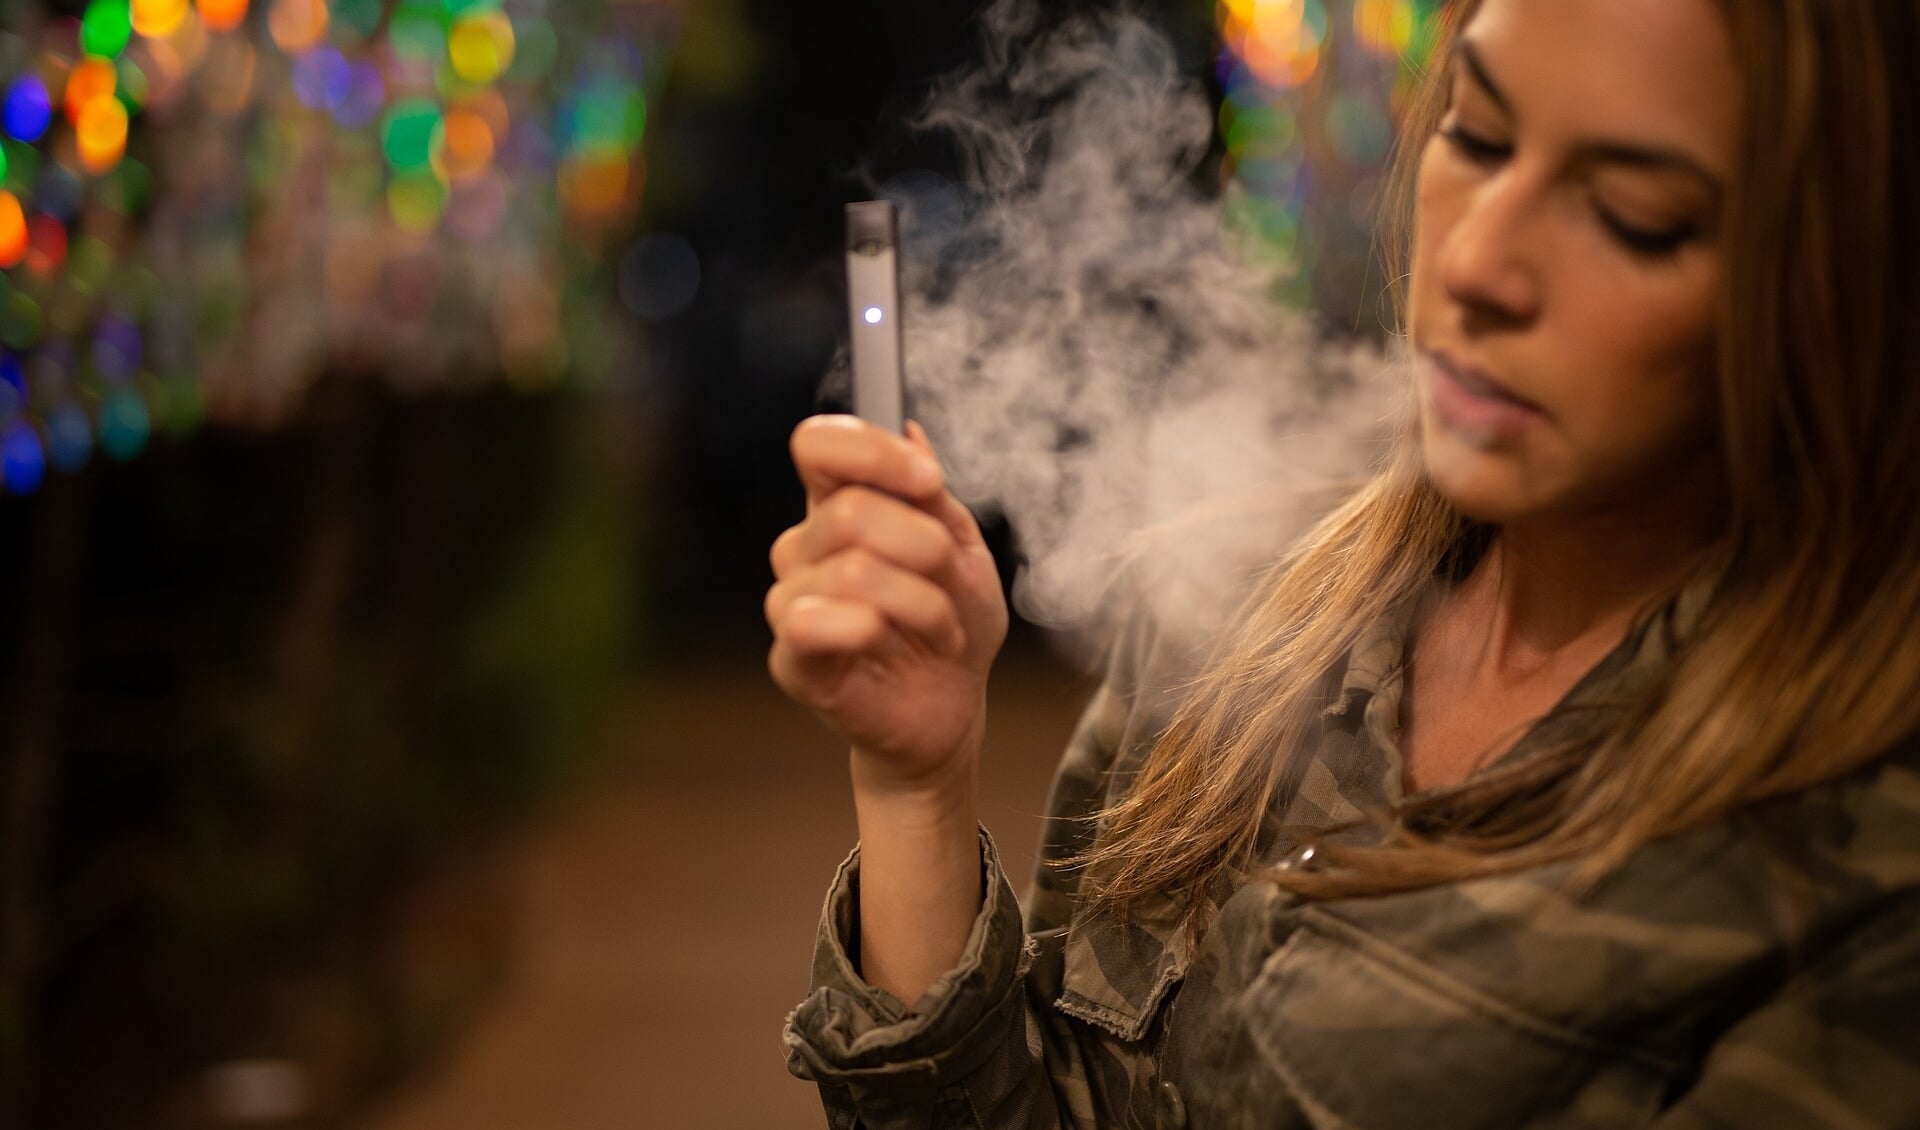 De e-sigaret is voor velen de manier om met roken te stoppen. 